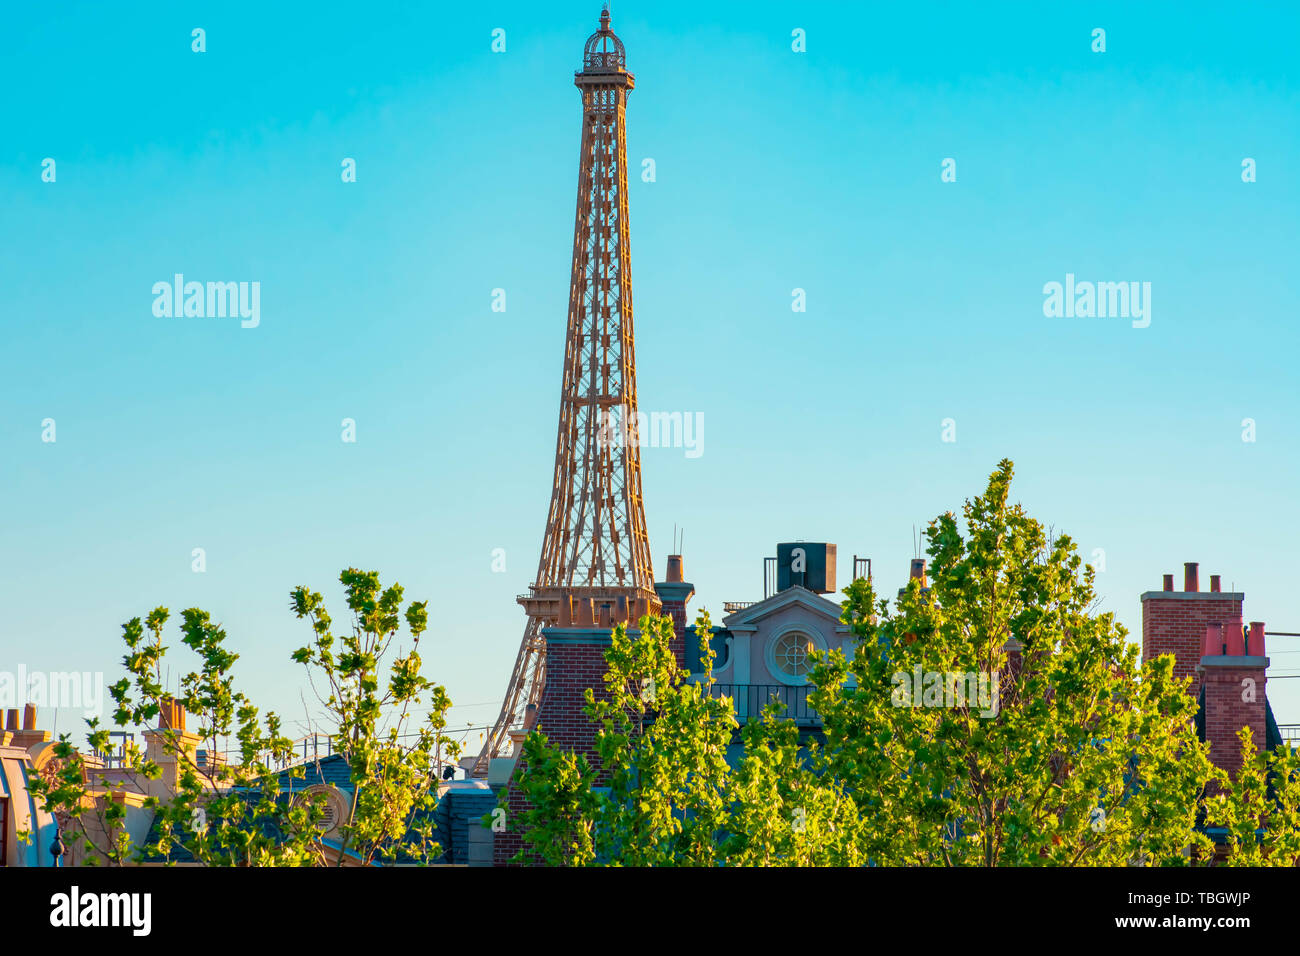 Disney Parks Epcot Paris France Eiffel Tower Minnie Mouse Ears